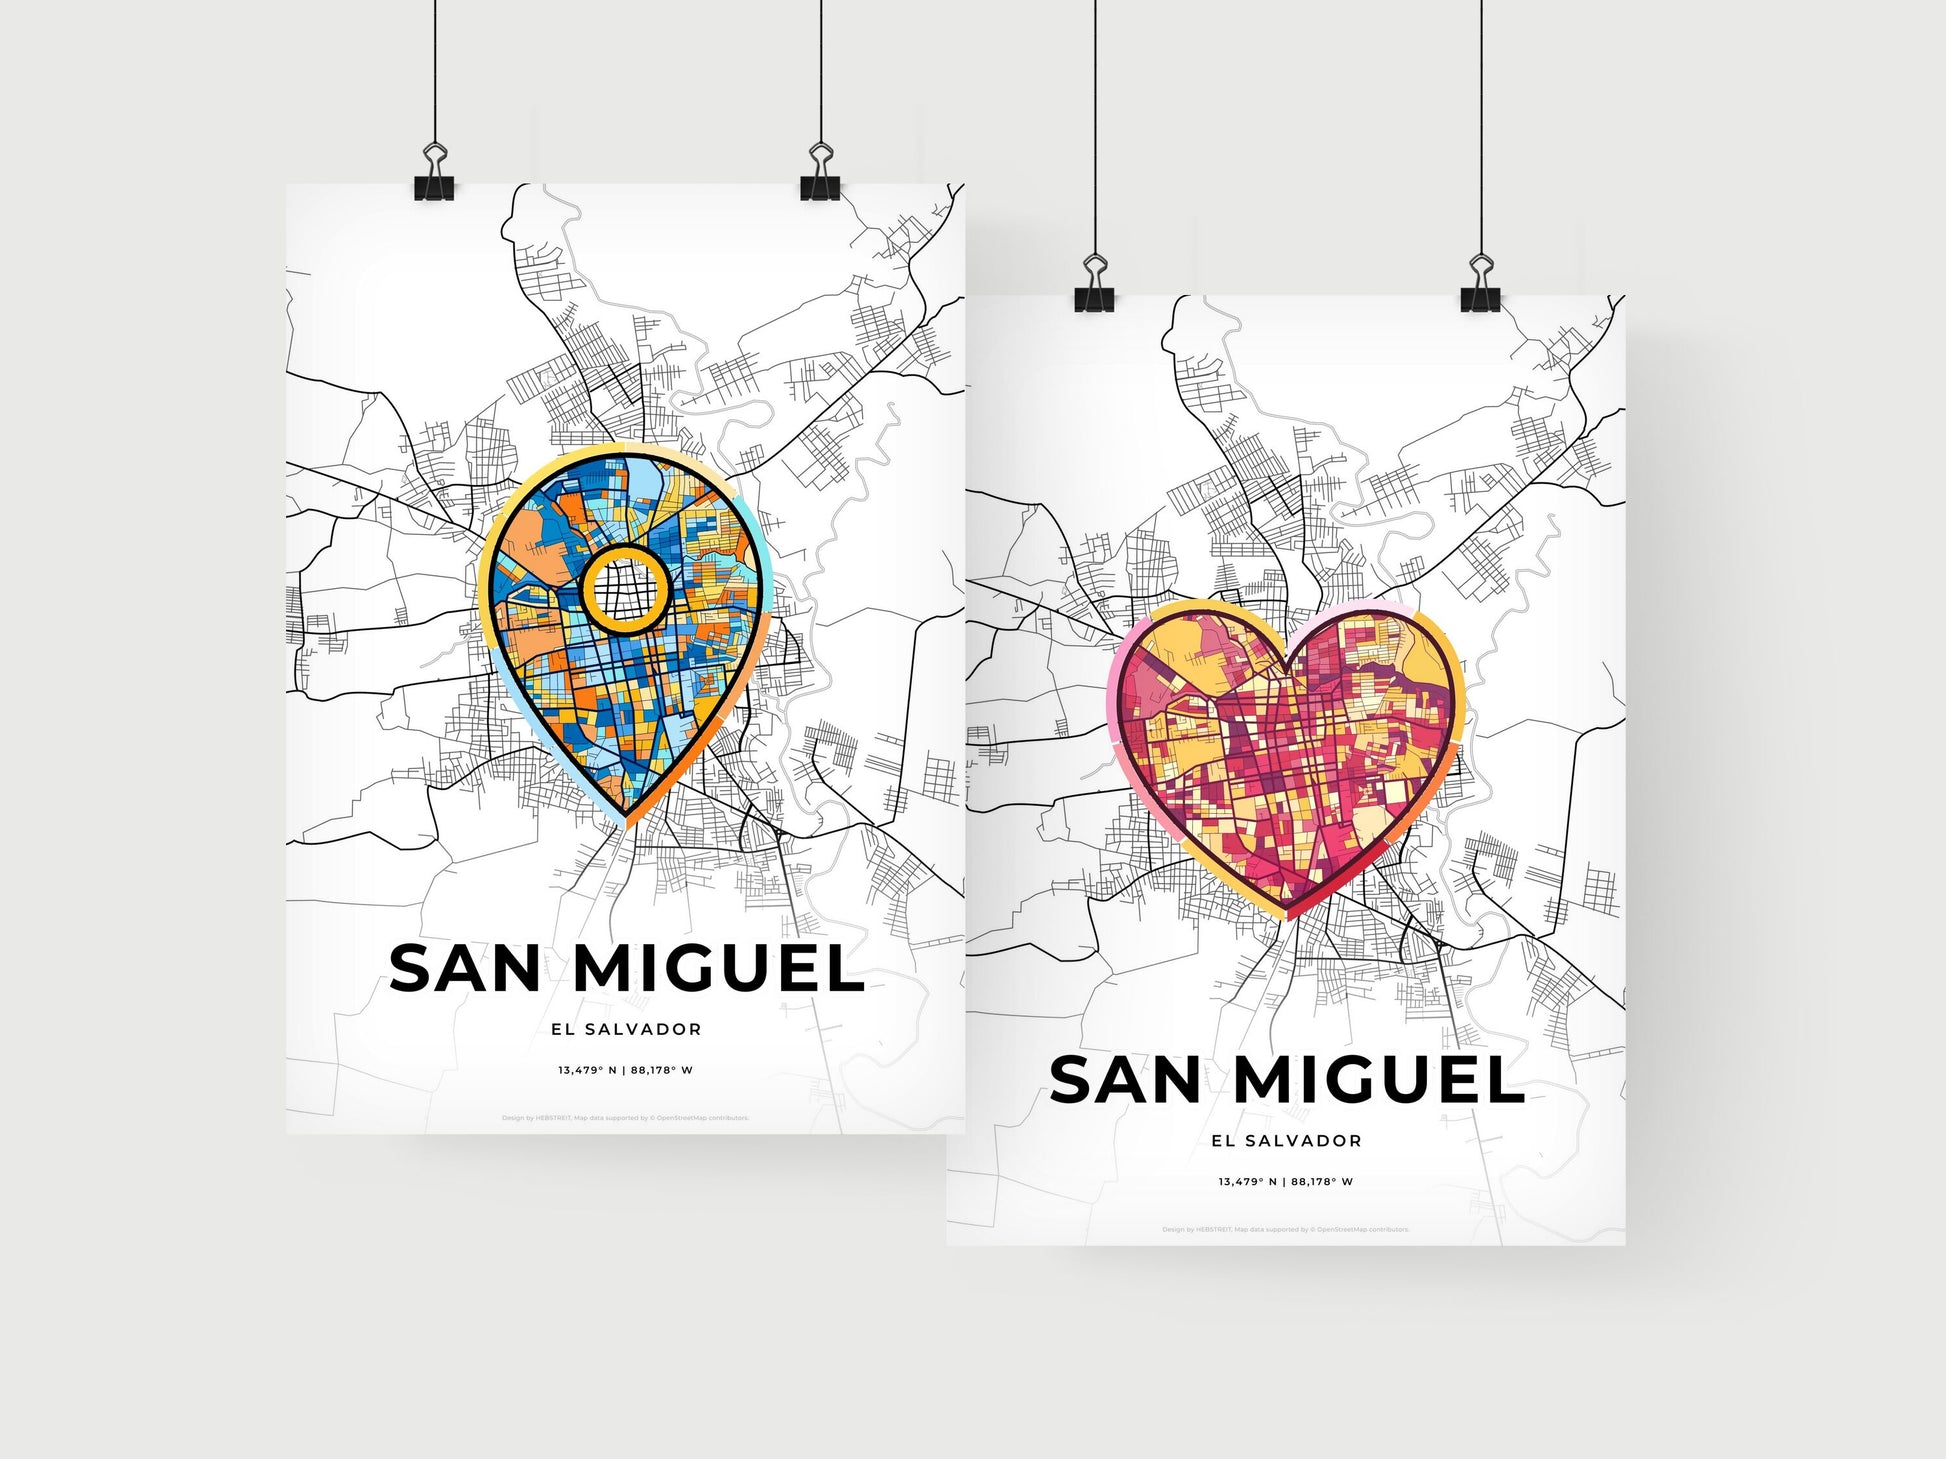 SAN MIGUEL EL SALVADOR minimal art map with a colorful icon.